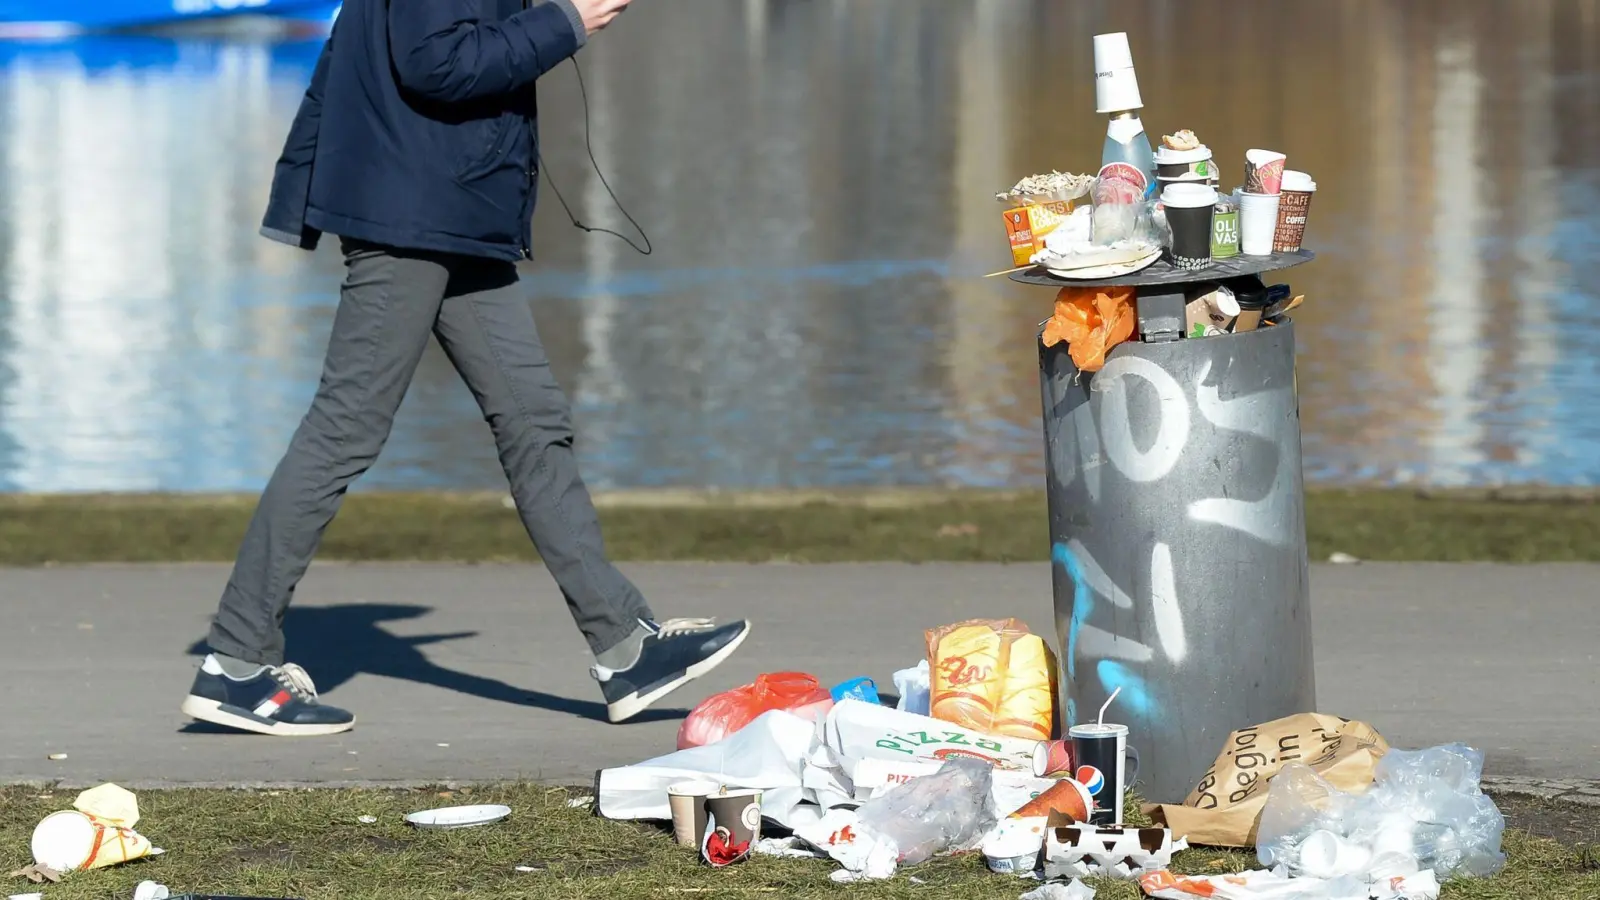 Kein seltenes Bild: Neben einem Mülleimer liegt Partymüll. (Foto: Jens Kalaene/dpa-Zentralbild/dpa)